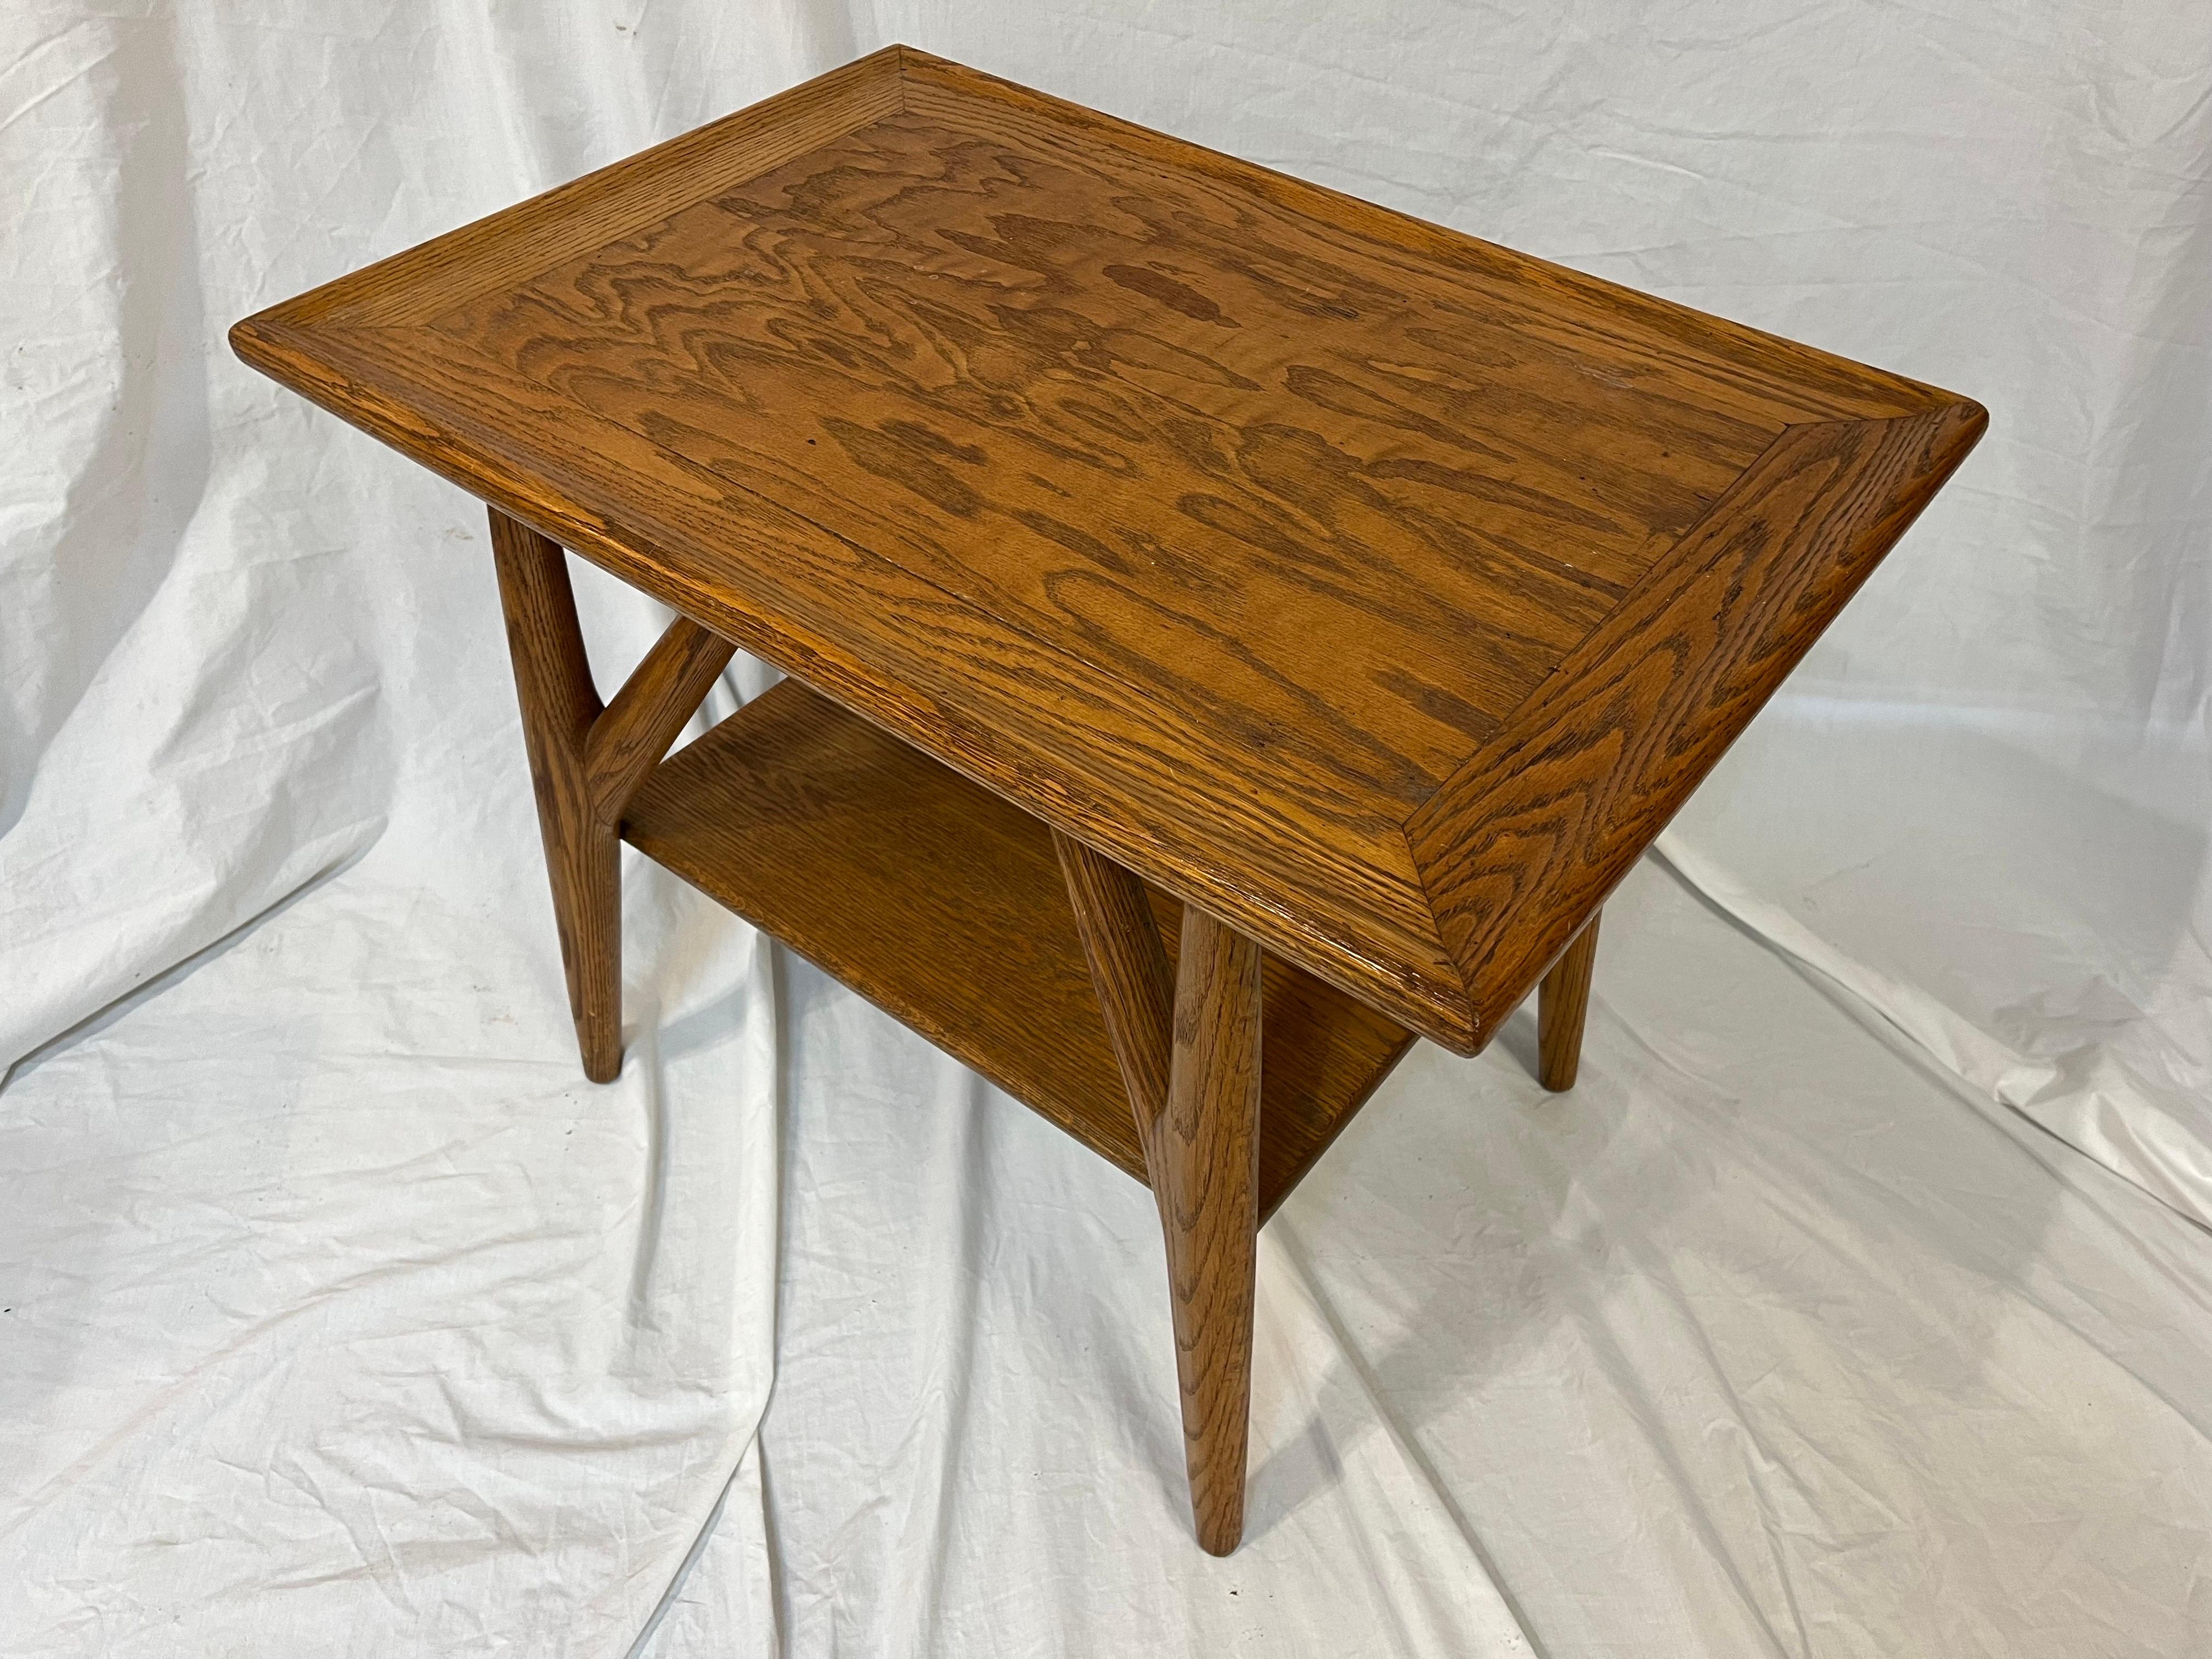 Table d'appoint ou de chevet en bois de chêne Jack Van der Molen de style moderne du milieu du siècle. Avec un grain fort et prononcé et un style assuré, cette pièce de l'histoire du design américain est prête pour votre intérieur. Voici quelques